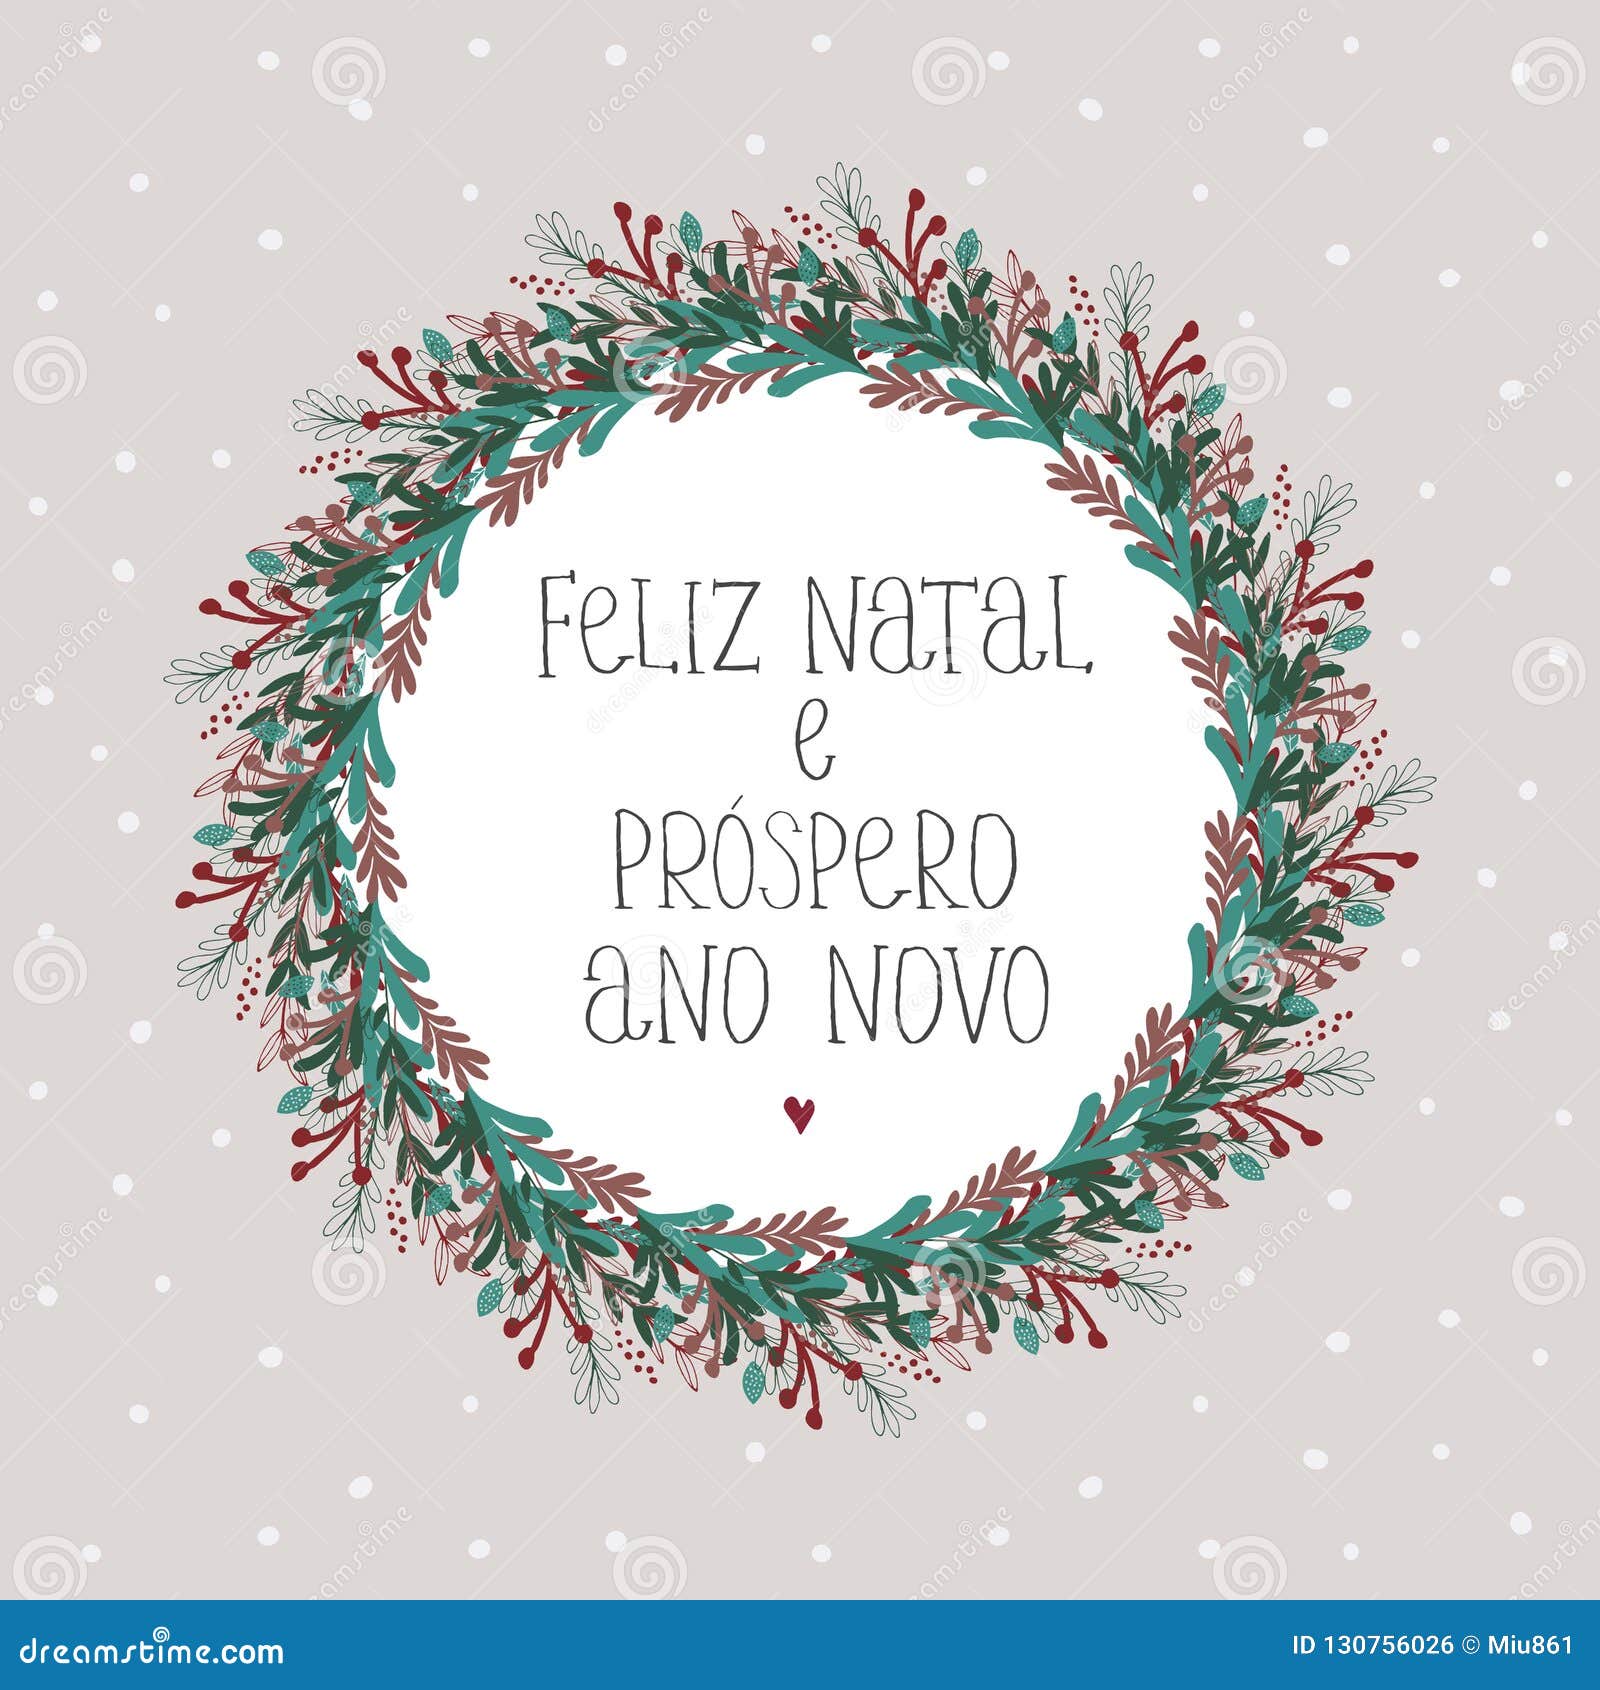 Feliz Natal Ano Novo Stock Illustrations – 30 Feliz Natal Ano Novo Stock  Illustrations, Vectors & Clipart - Dreamstime